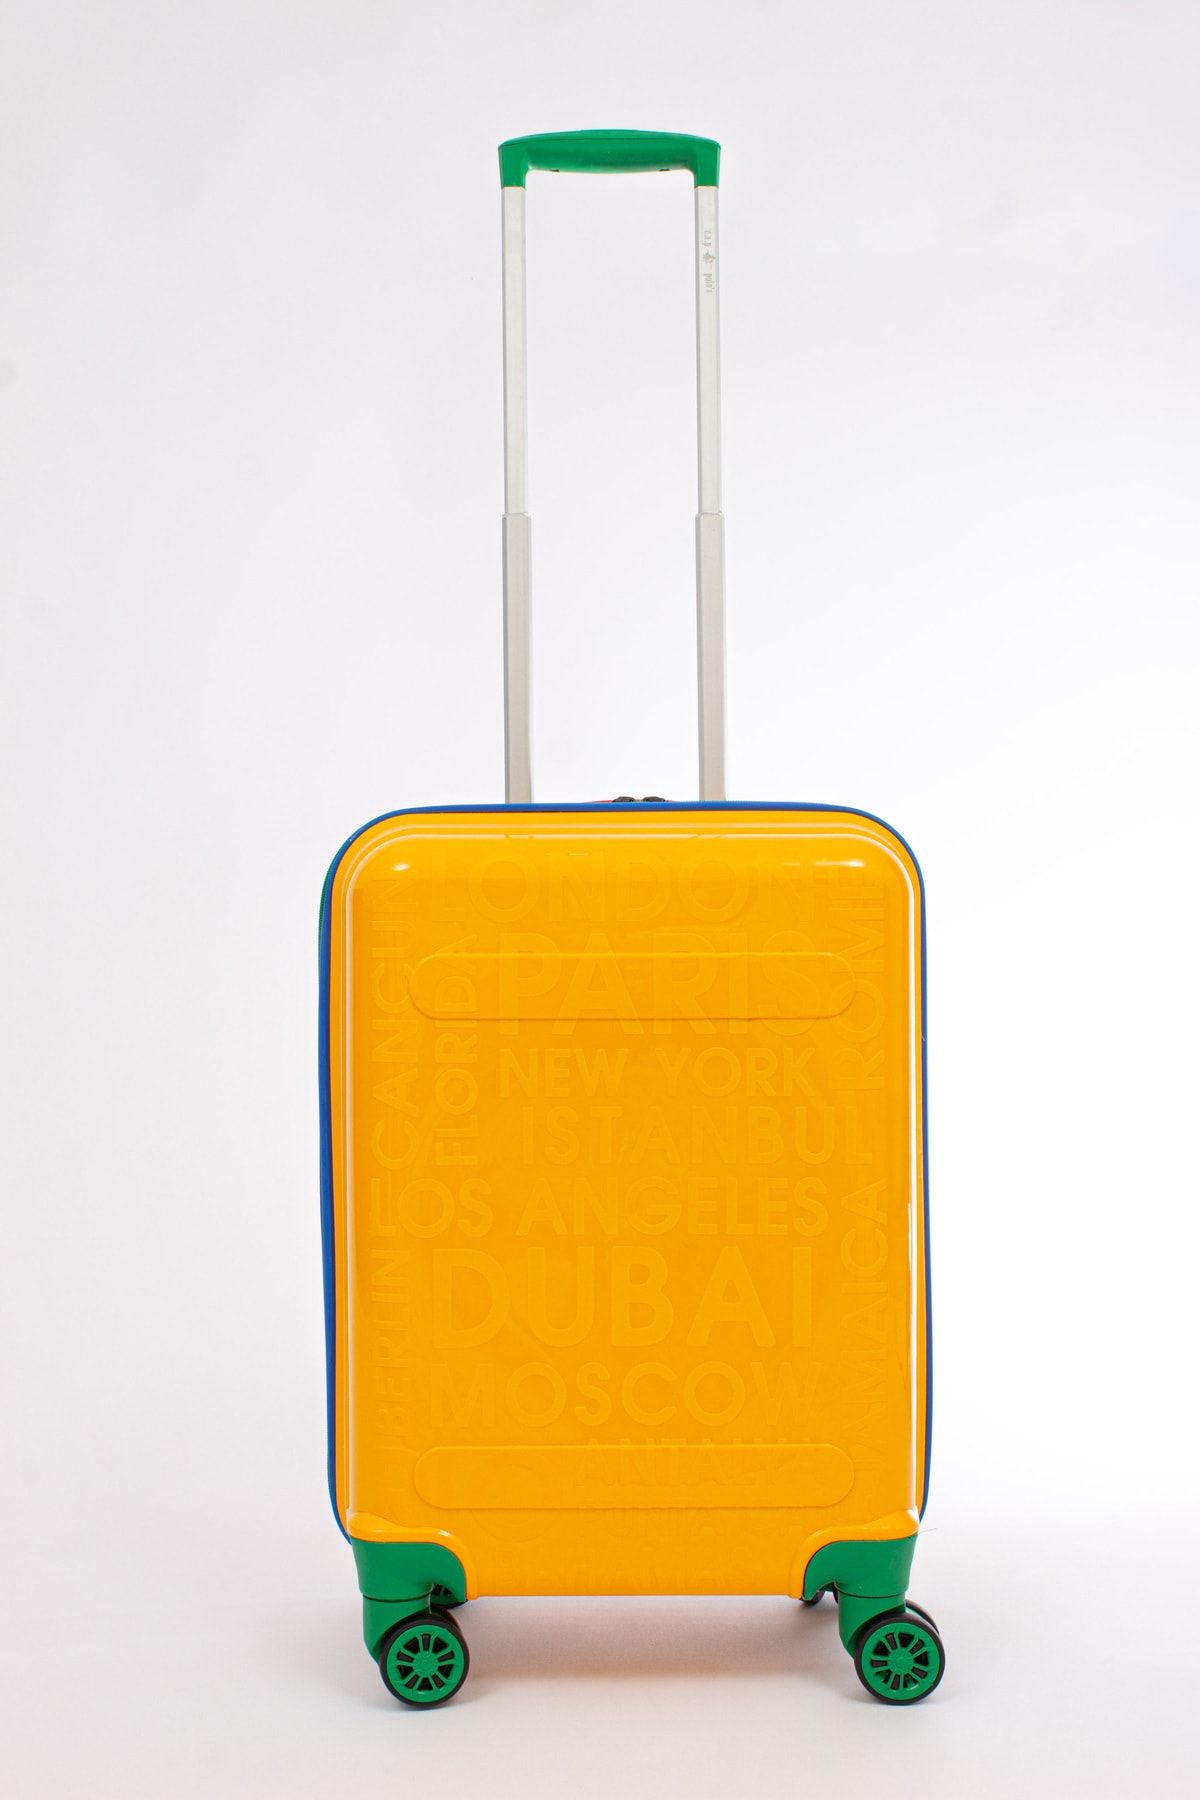 KAFF Albatros Cap Polo's Sarı 4 Teker PP 112 Kırılmaz Dayanıklı Kabin Boy Küçük Valiz & Bavul